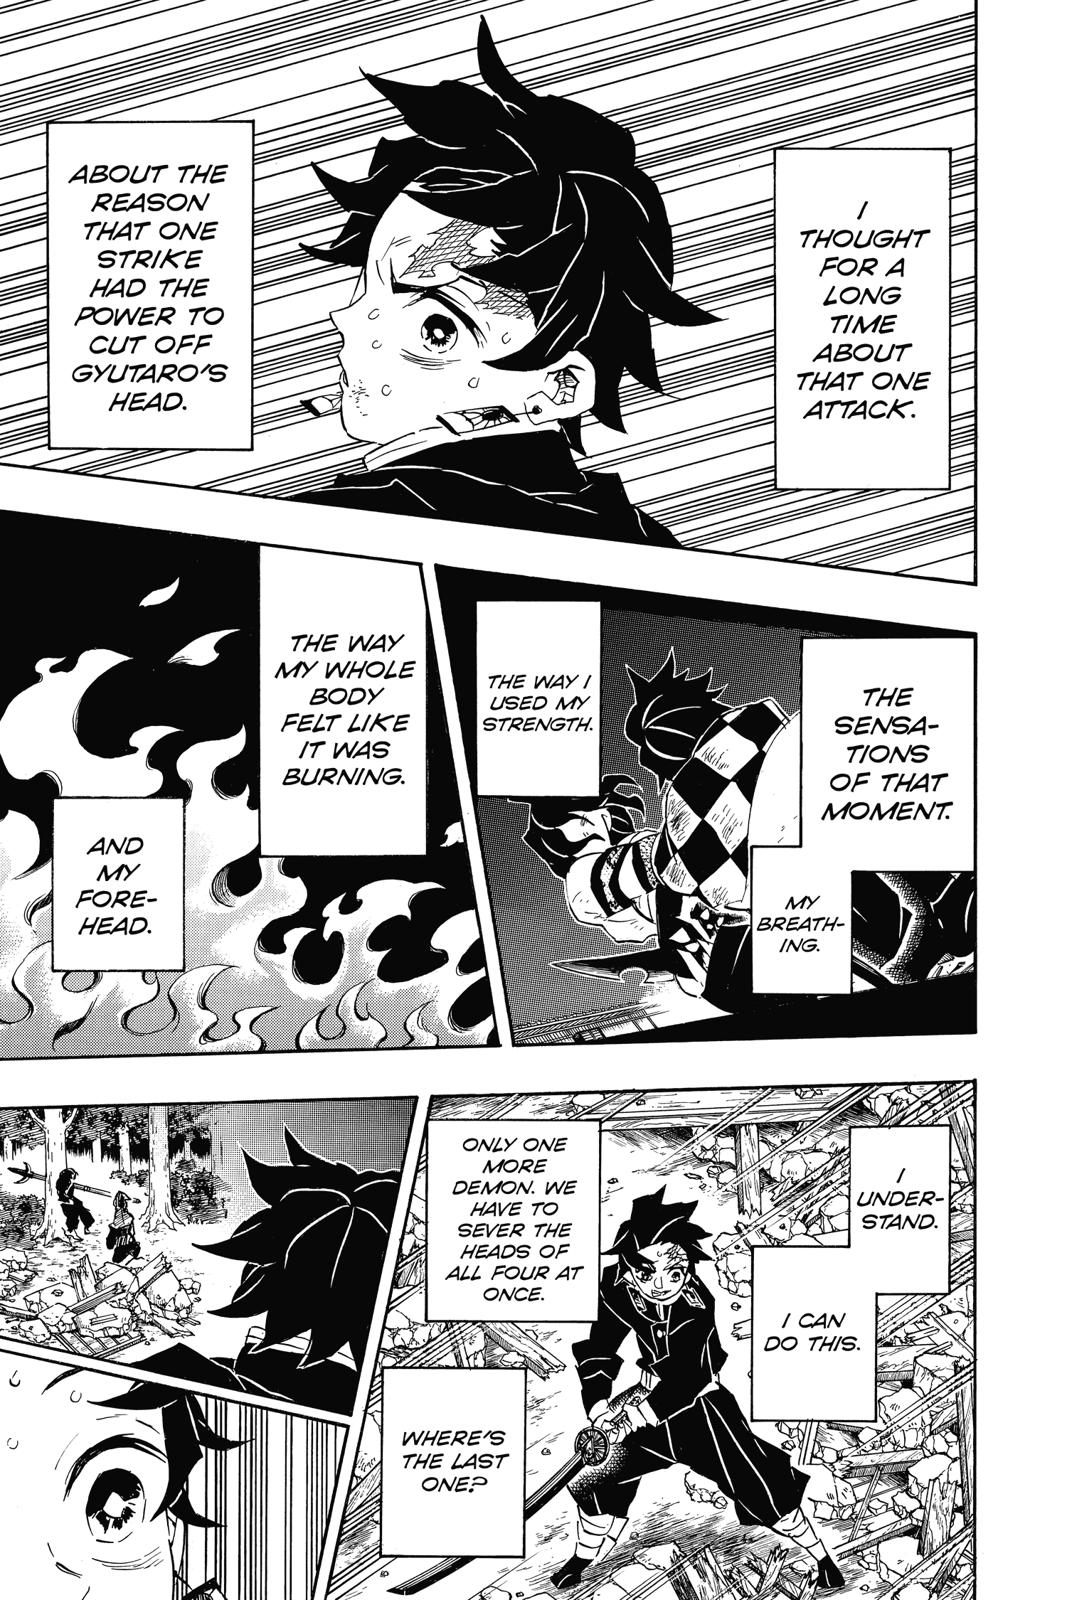 Demon Slayer Manga Manga Chapter - 113 - image 10